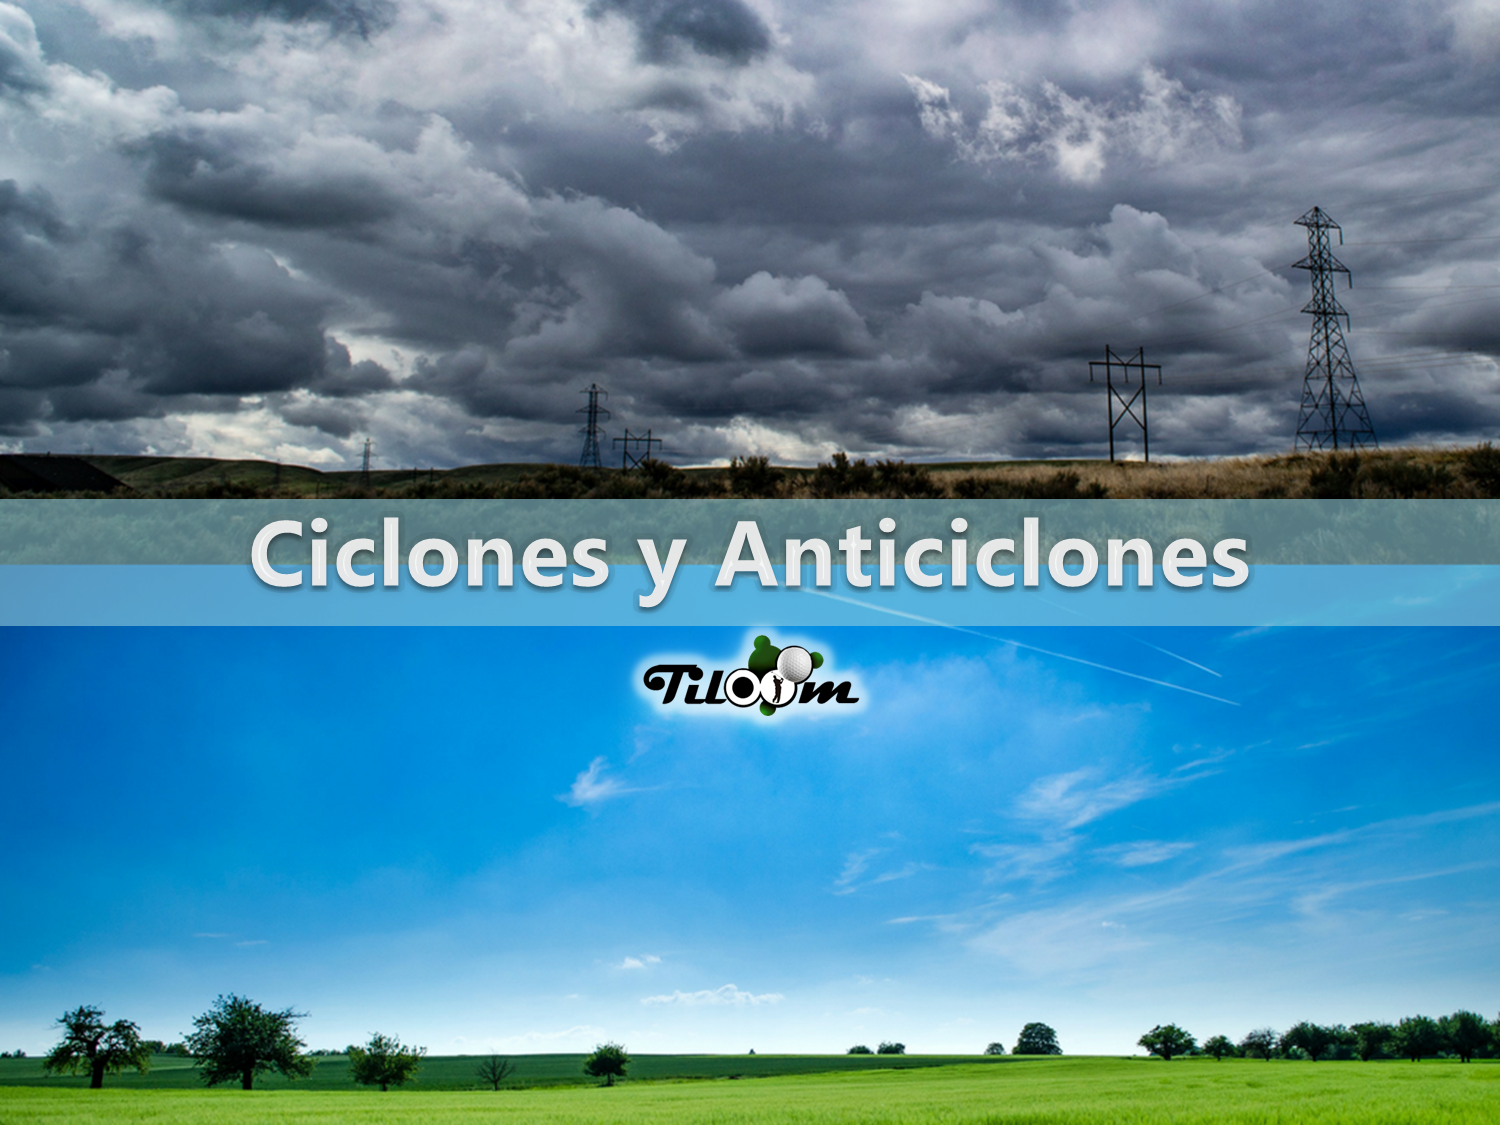 ciclones y anticiclones